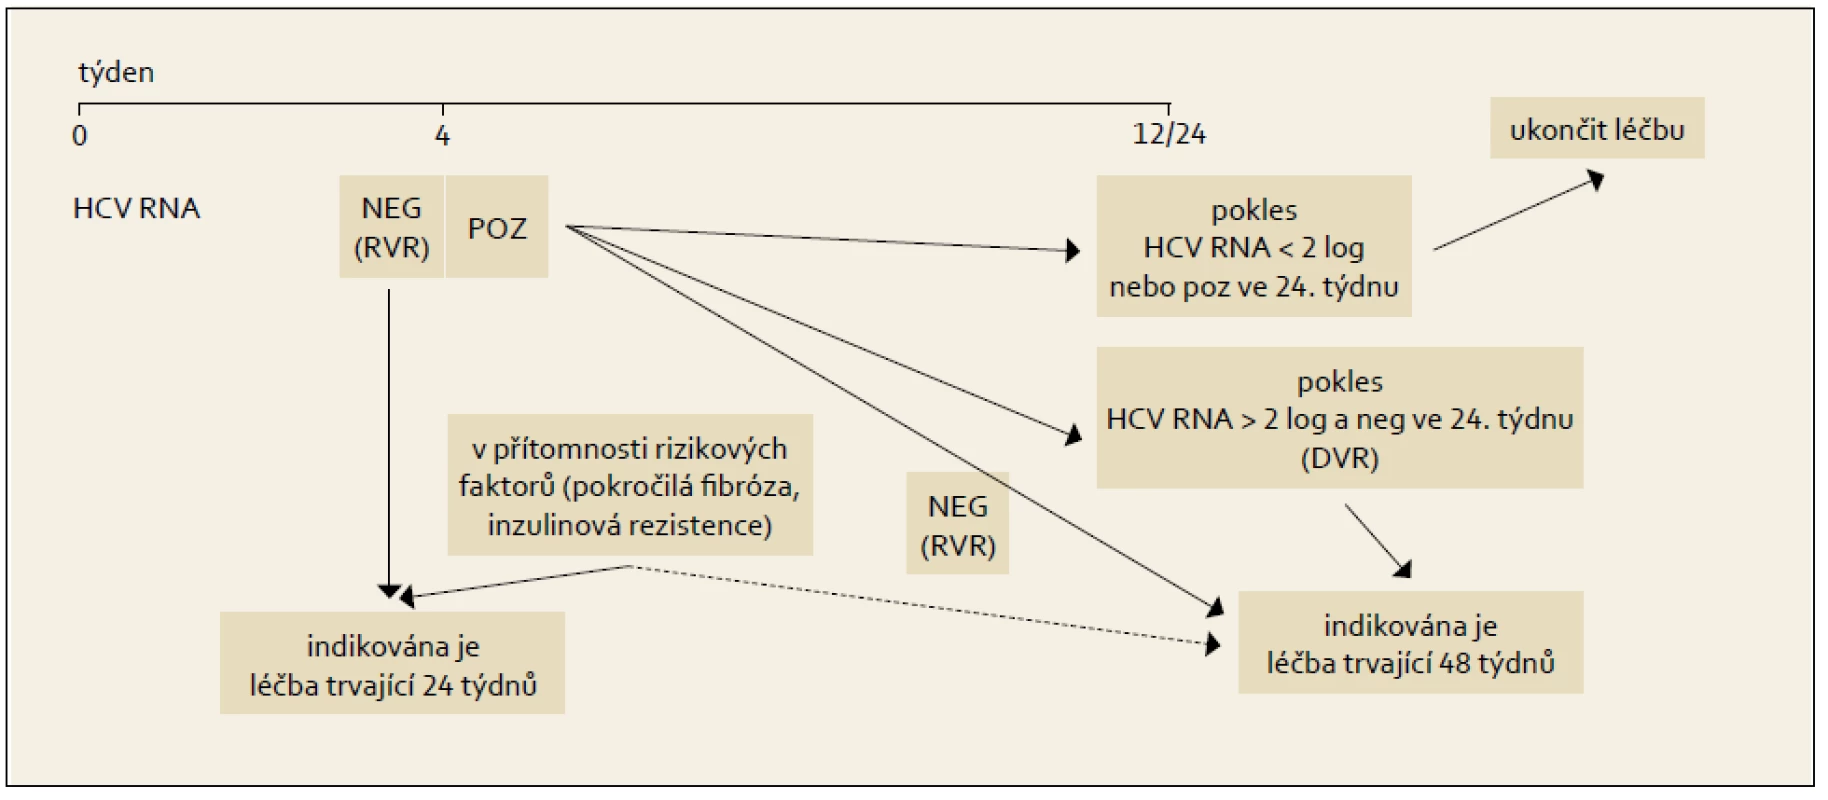 Léčba vedená podle dosažené virologické odpovědi během terapie, genotypy HCV 2 + 3.
Fig. 7. Treatment administered based on the achieved virological response during the therapy, HCV 2 + 3 genotypes.